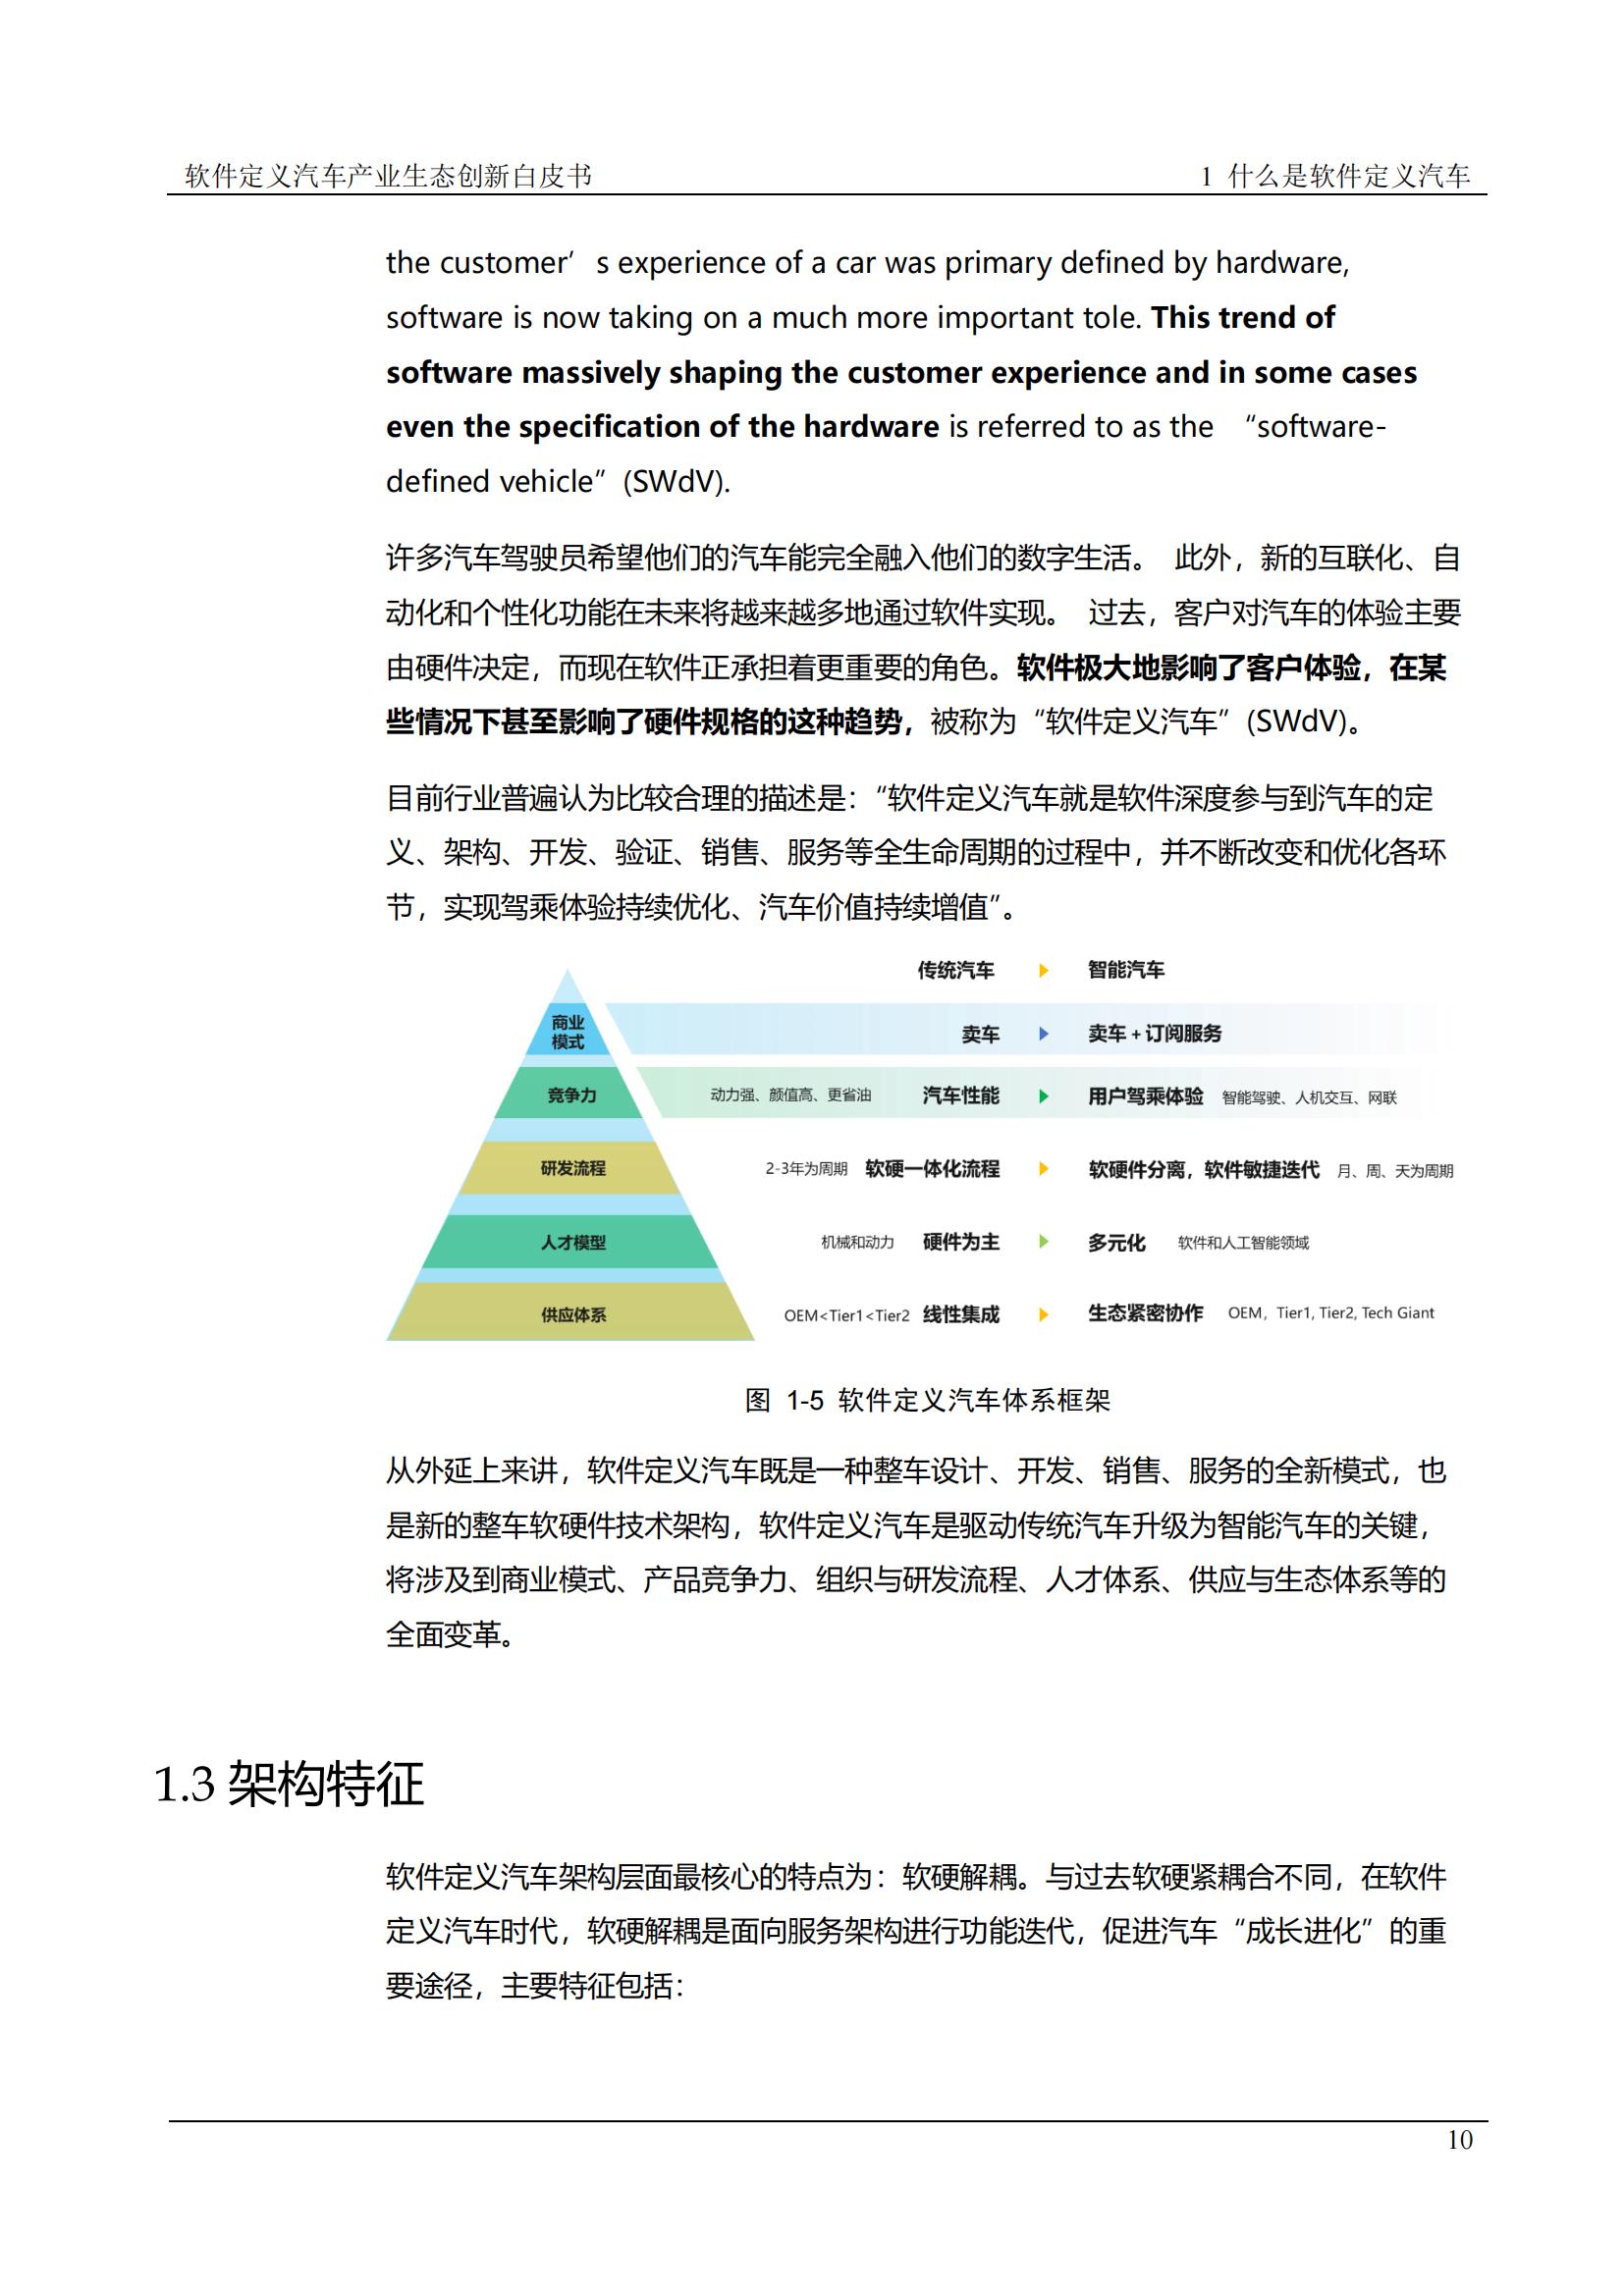 中国软件定义汽车SDV白皮书  20221110_09.jpg